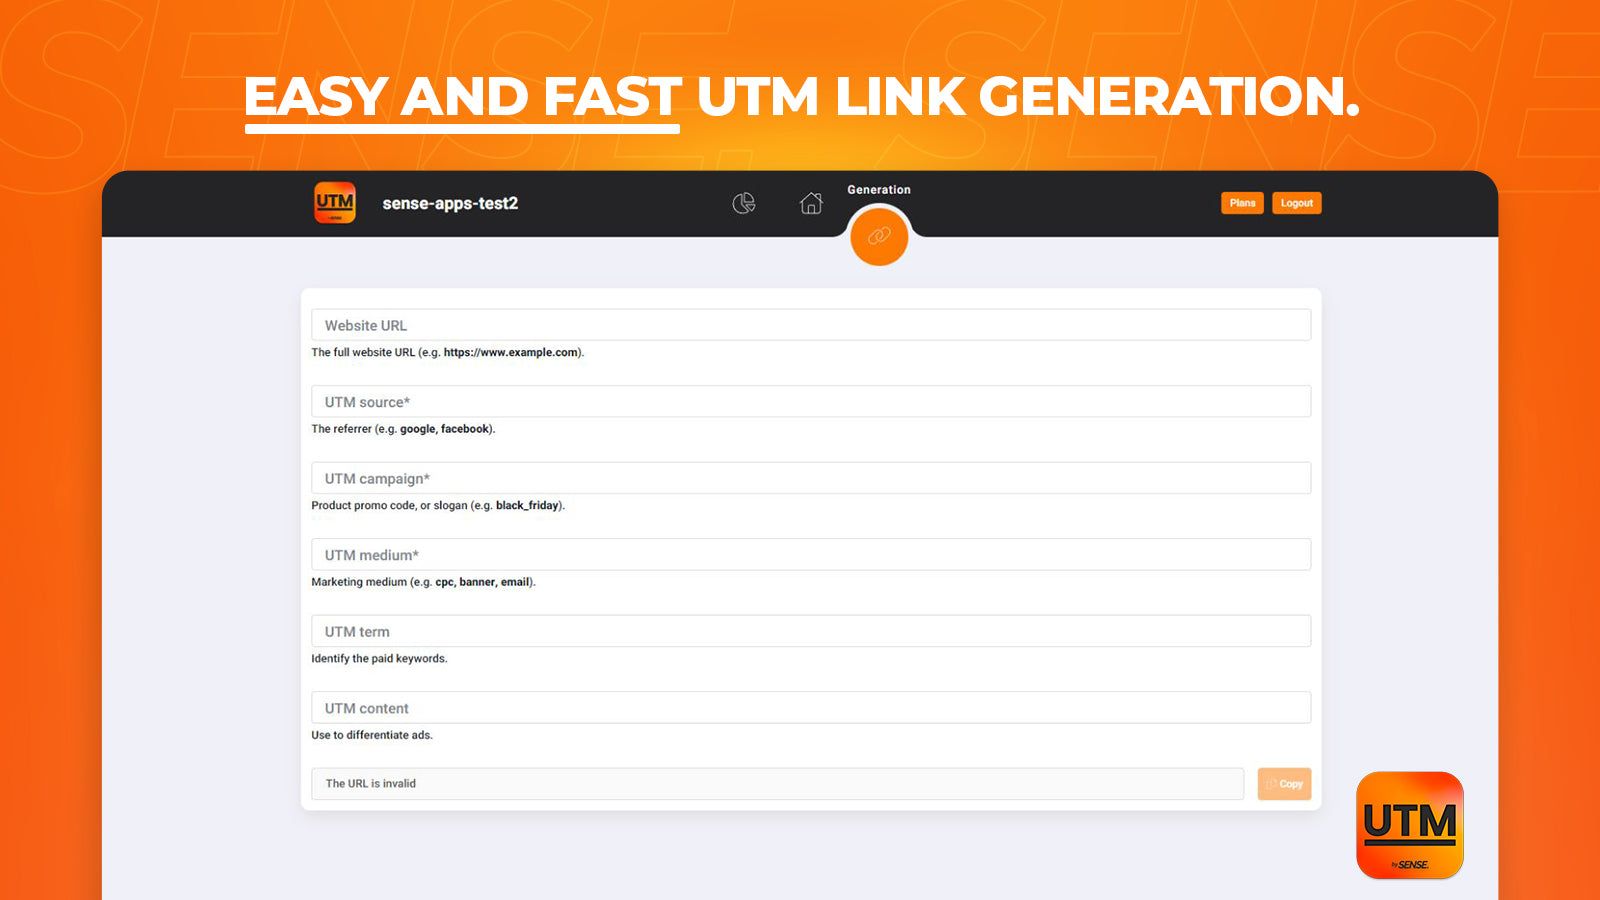 Easily generate UTM links